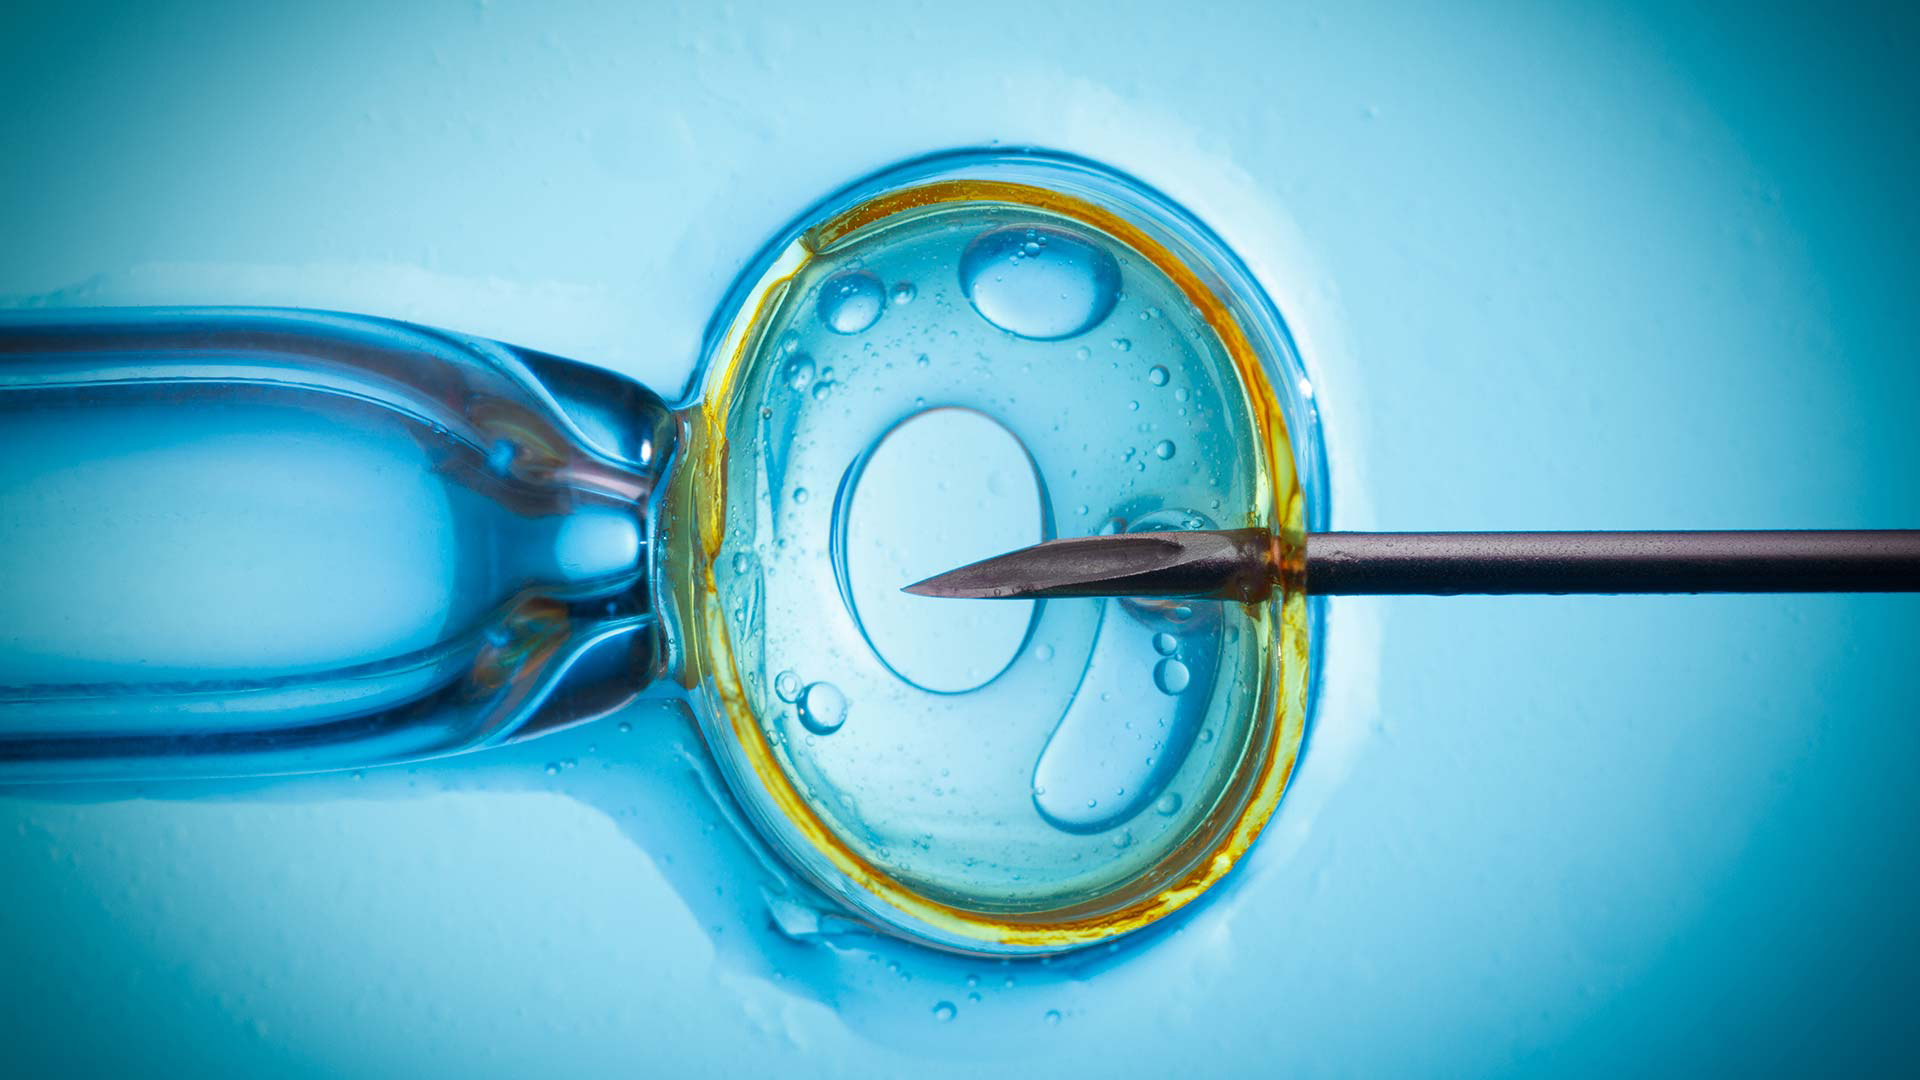 Primer equipo europeo que podrá editar genéticamente embriones humanos